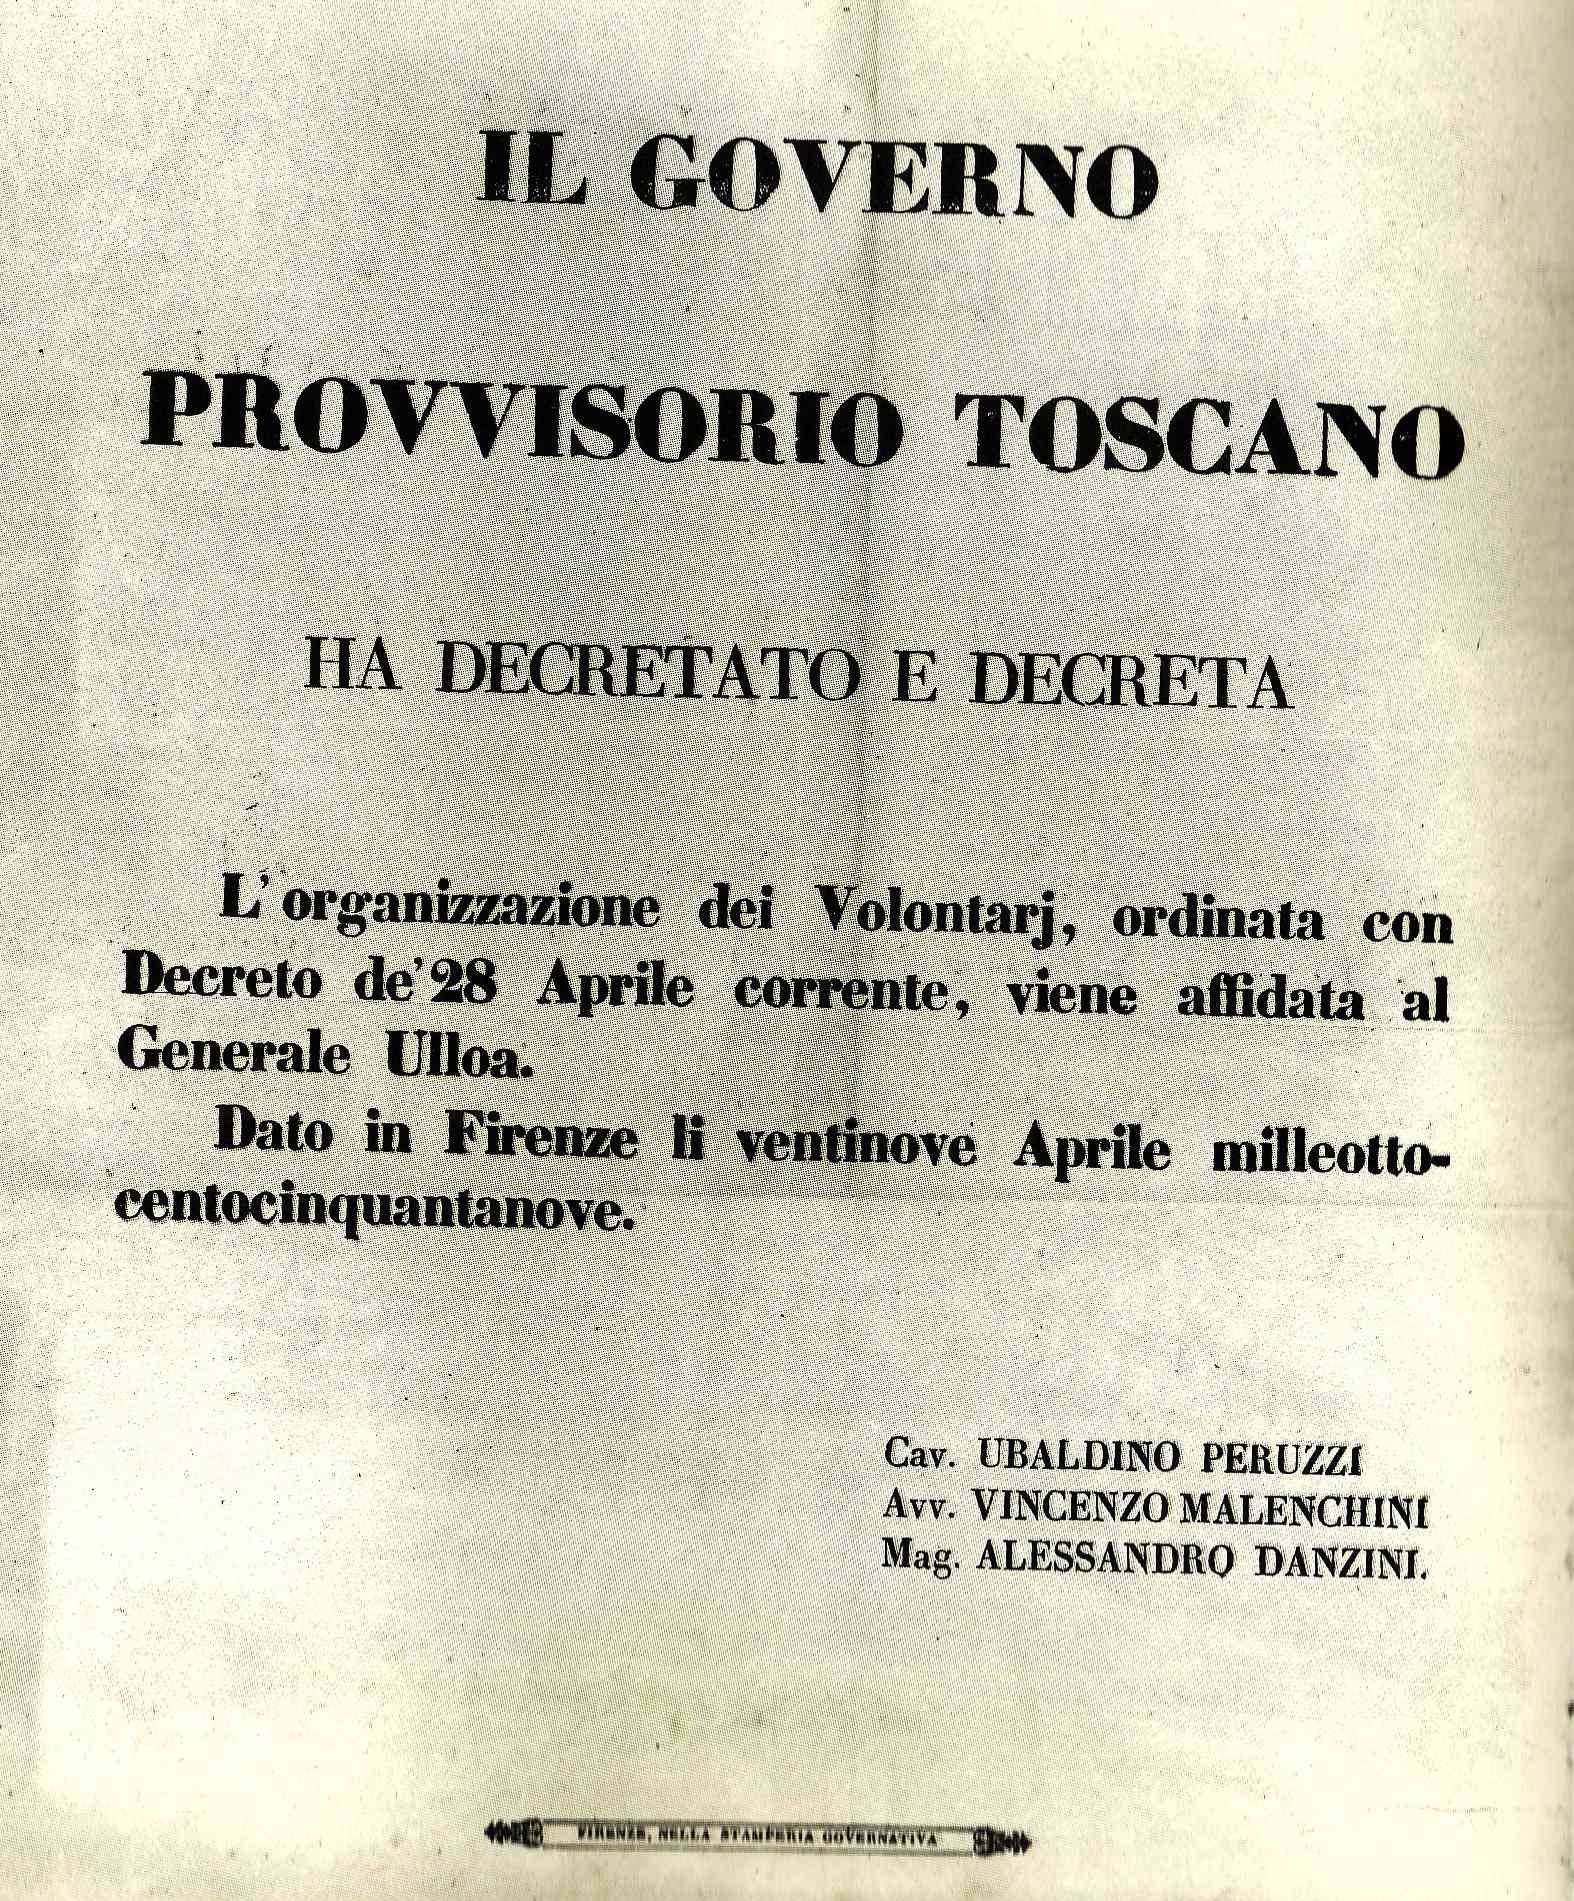 Il governo provvisorio toscano affida al generale Ulloa l'organizzazione di corpi di volontari